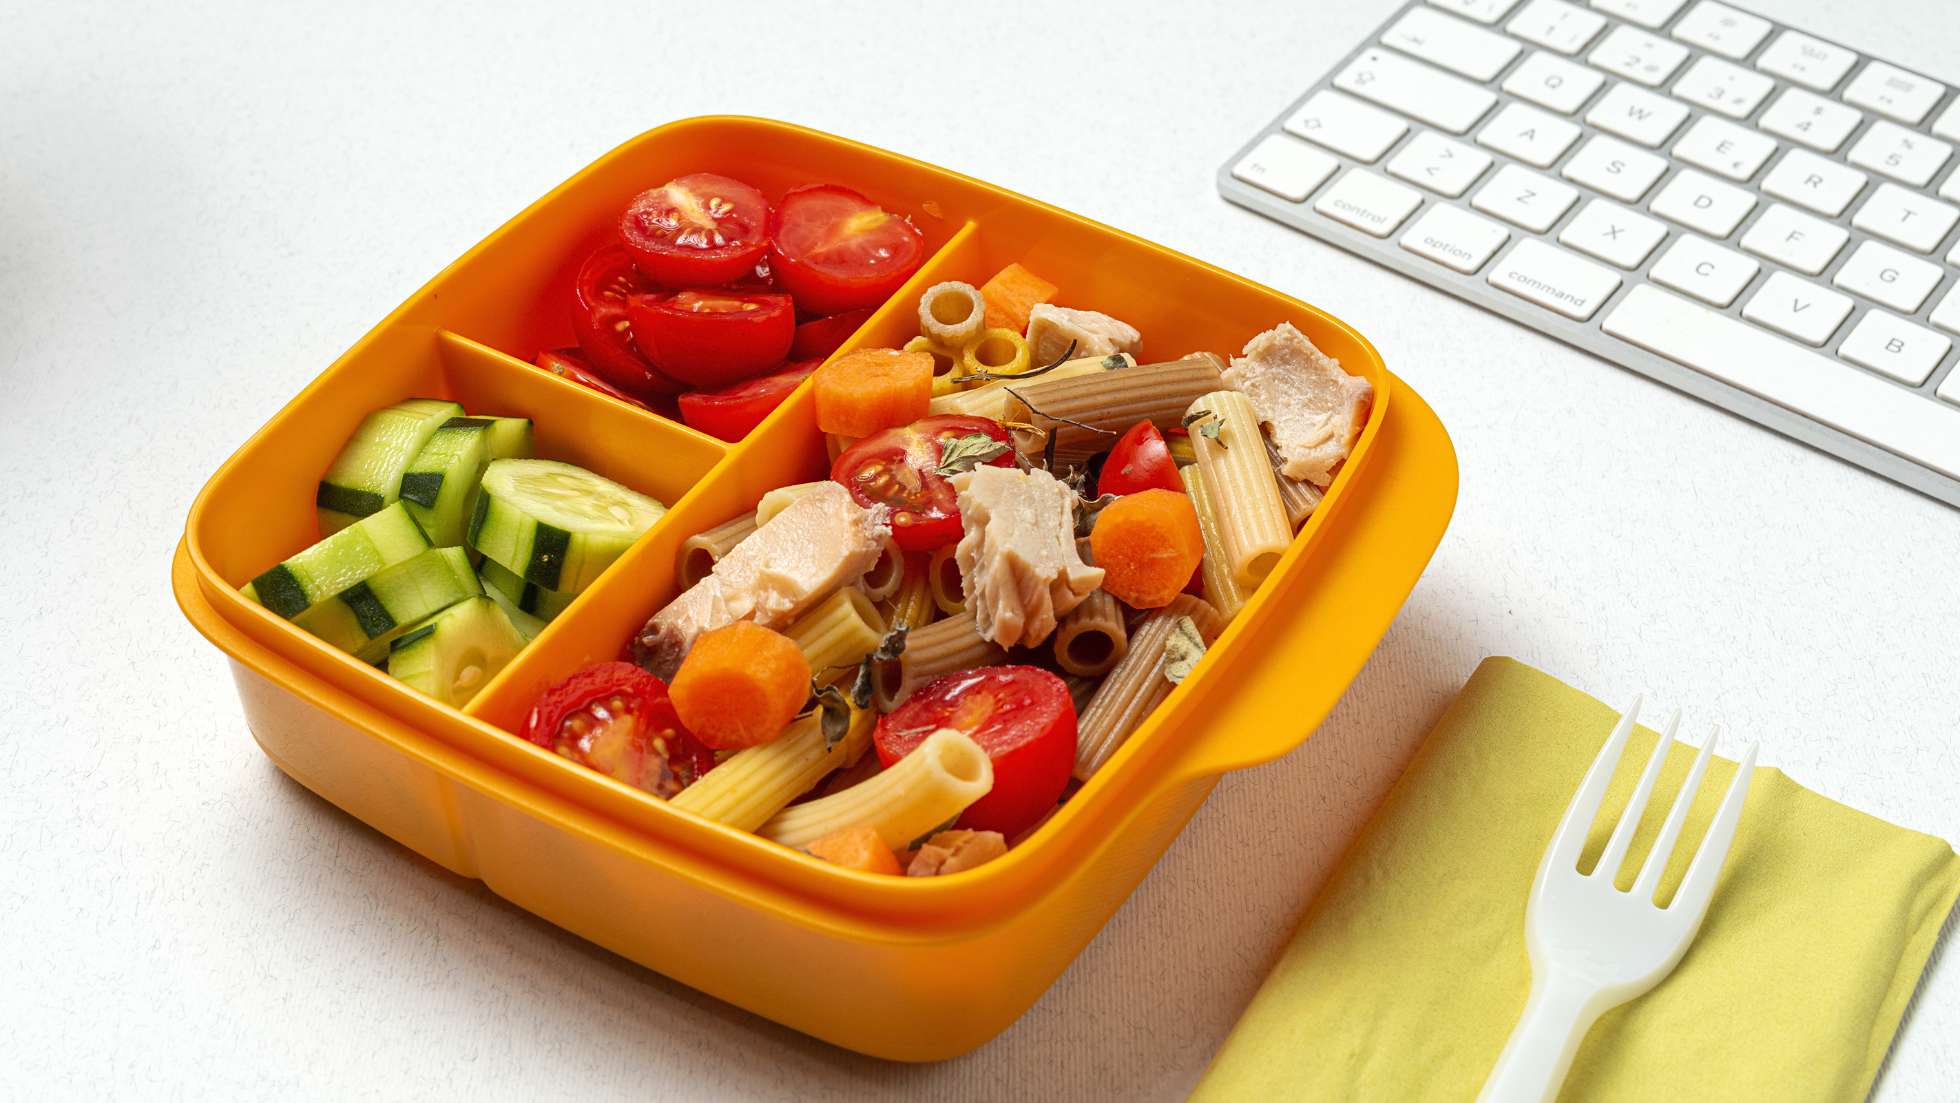 Znaczenie drugiego śniadania w diecie dziecka i dorosłego - zdjęcie ilustrtacyjne wpisu na bloga przedstawiające lunchbox na biurku przed klawiaturą